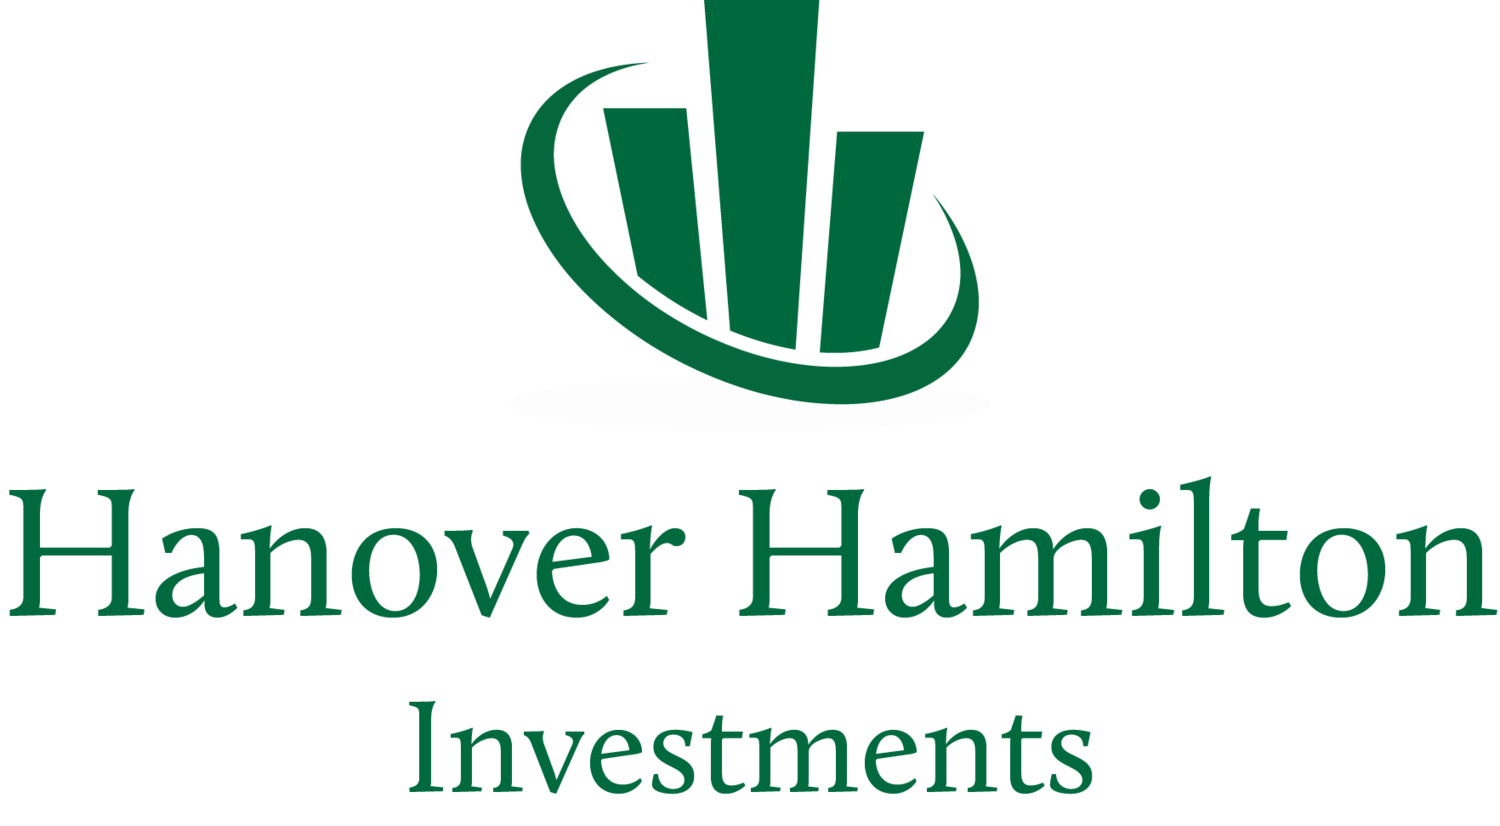 Hanover Hamilton Investments